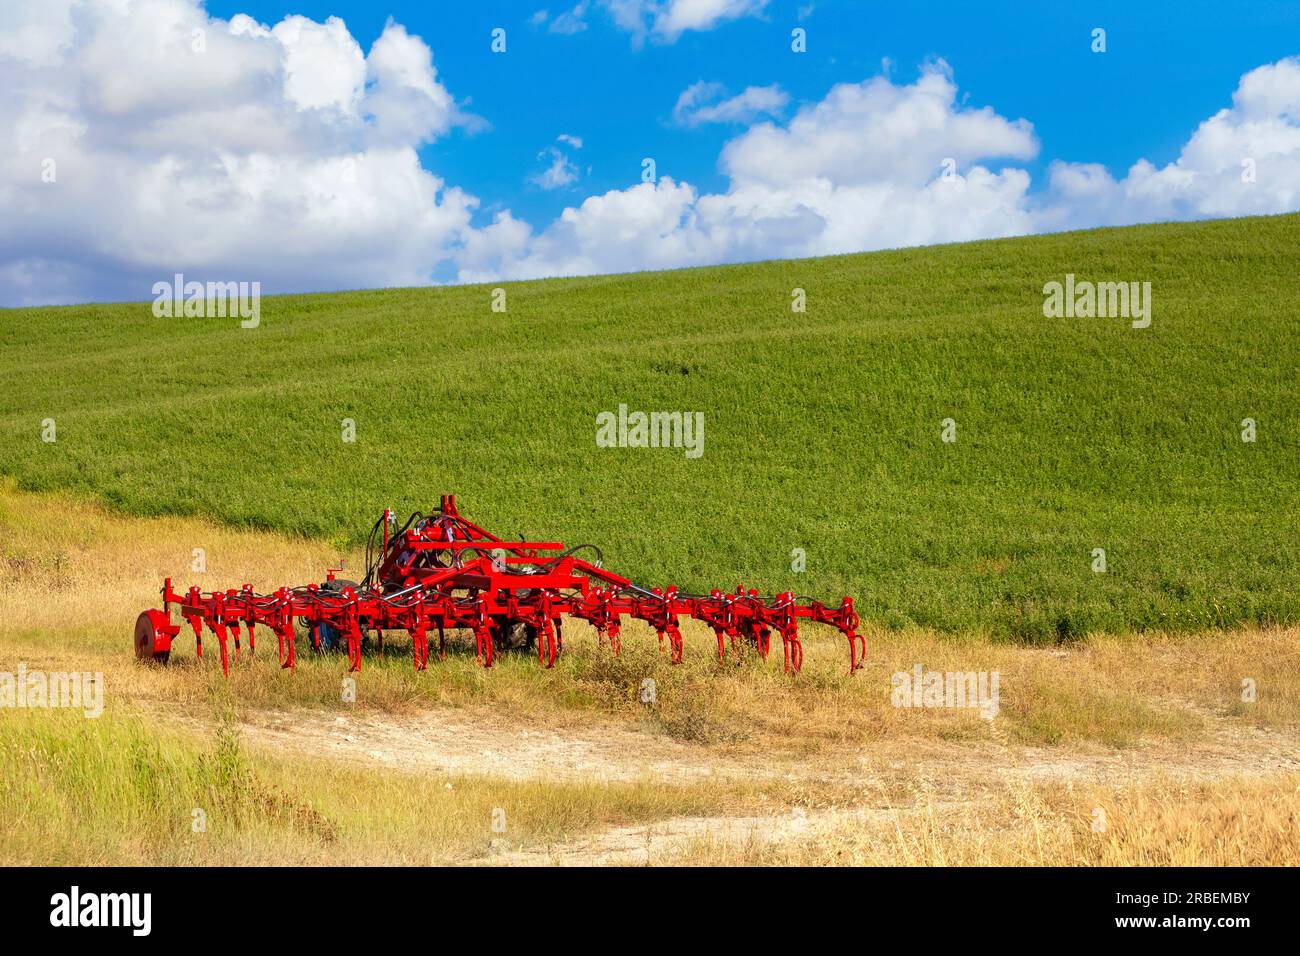 Llamativo equipo de granja roja estacionado en un pintoresco paisaje de hierba seca y exuberante pradera Foto de stock